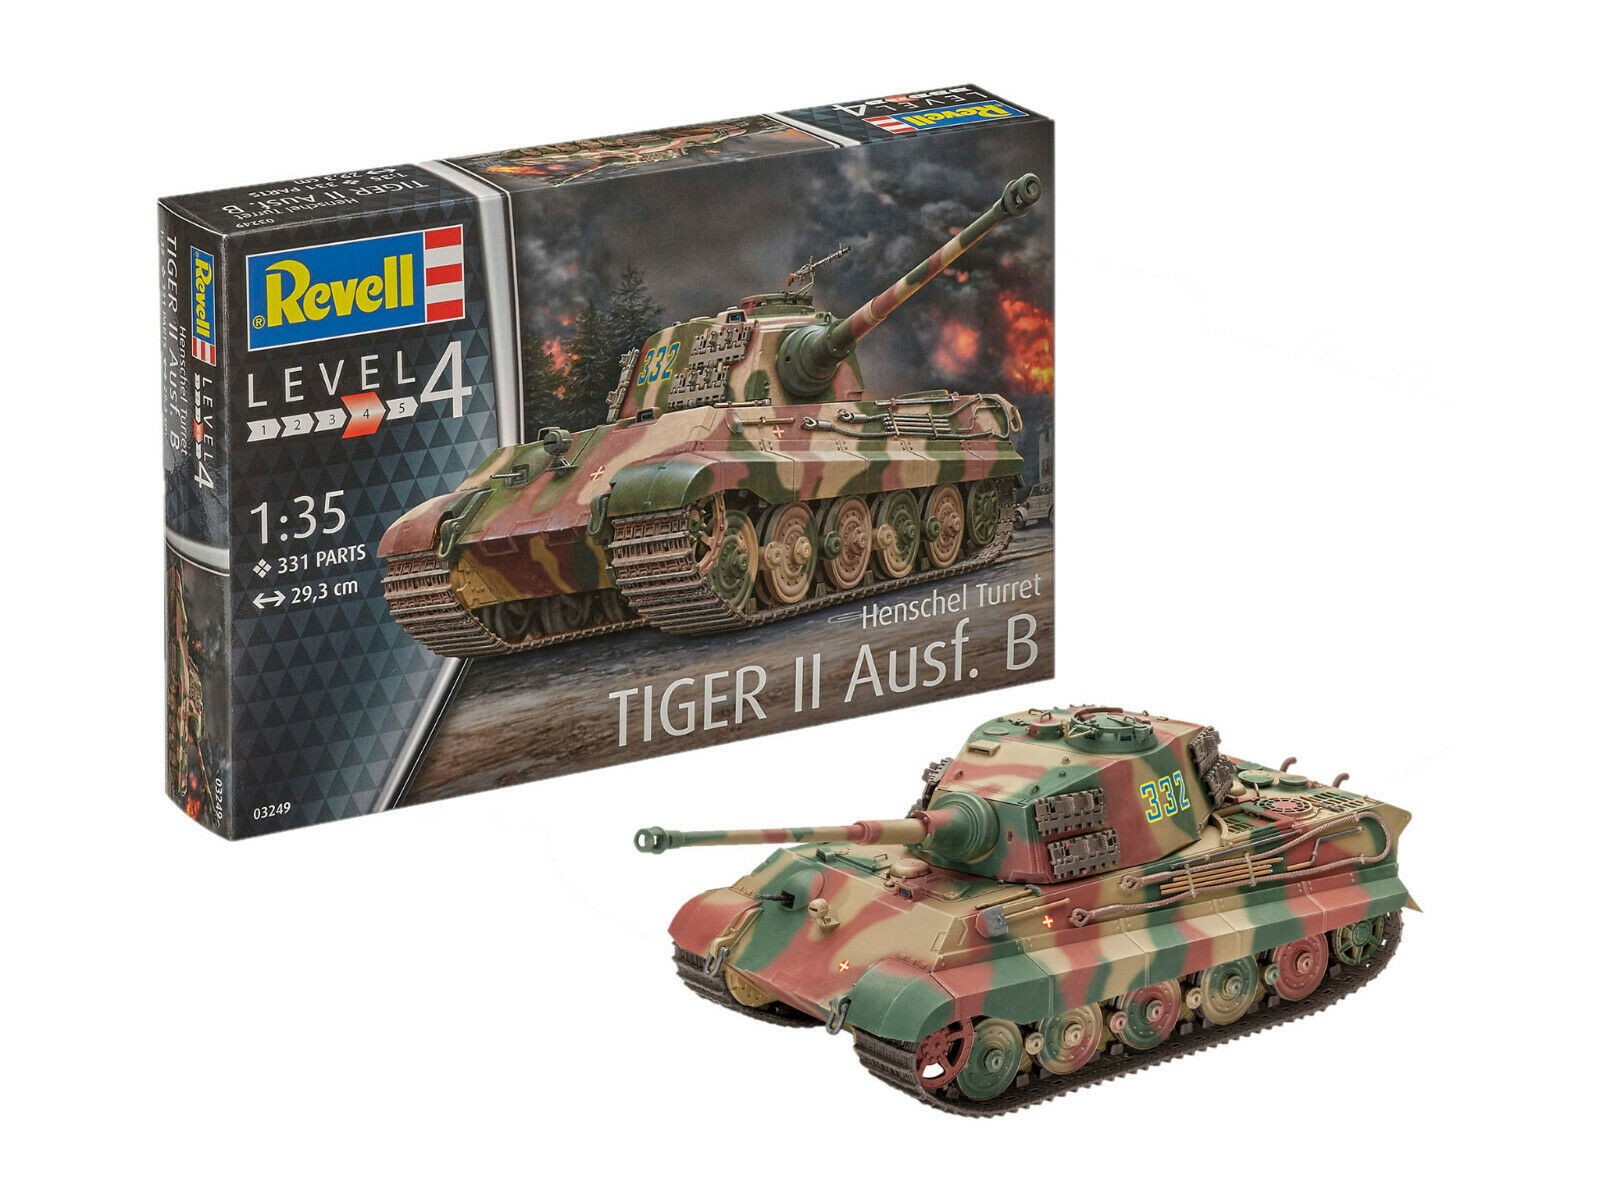 Revell 03249 Tiger II Ausf.B Henschel Turret  1:35